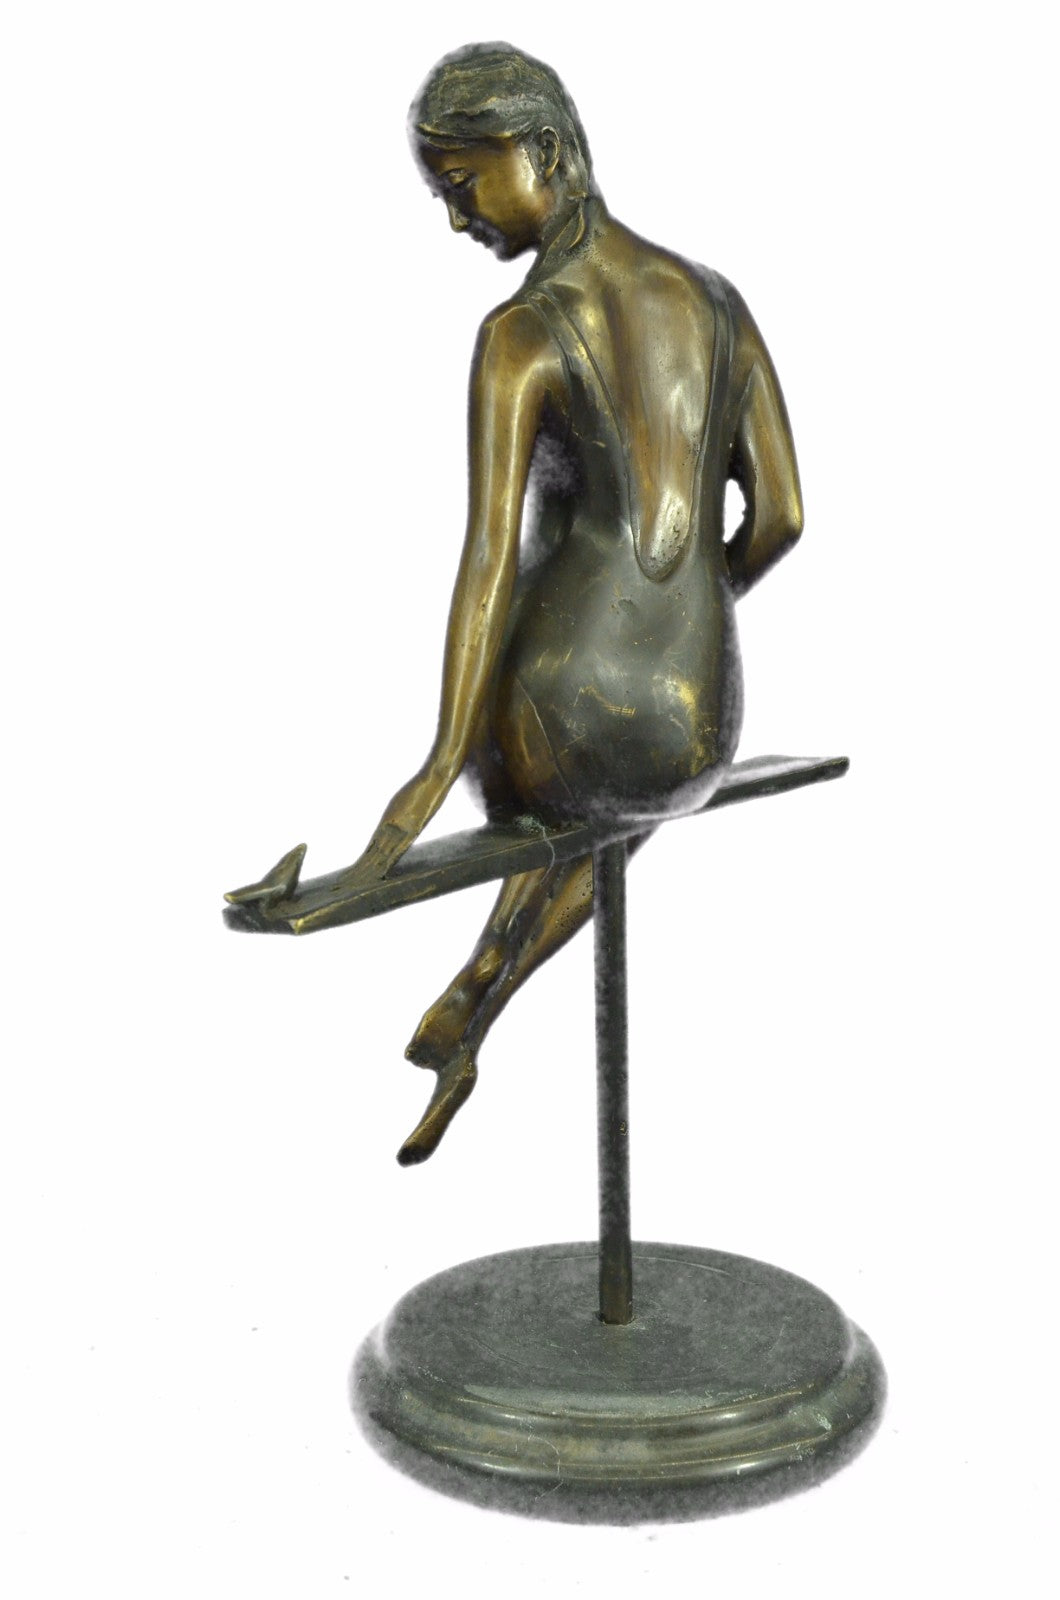 Hot Cast Semi Nude Female Woman Lady With Bird Bronze Sculpture Statue Figurine